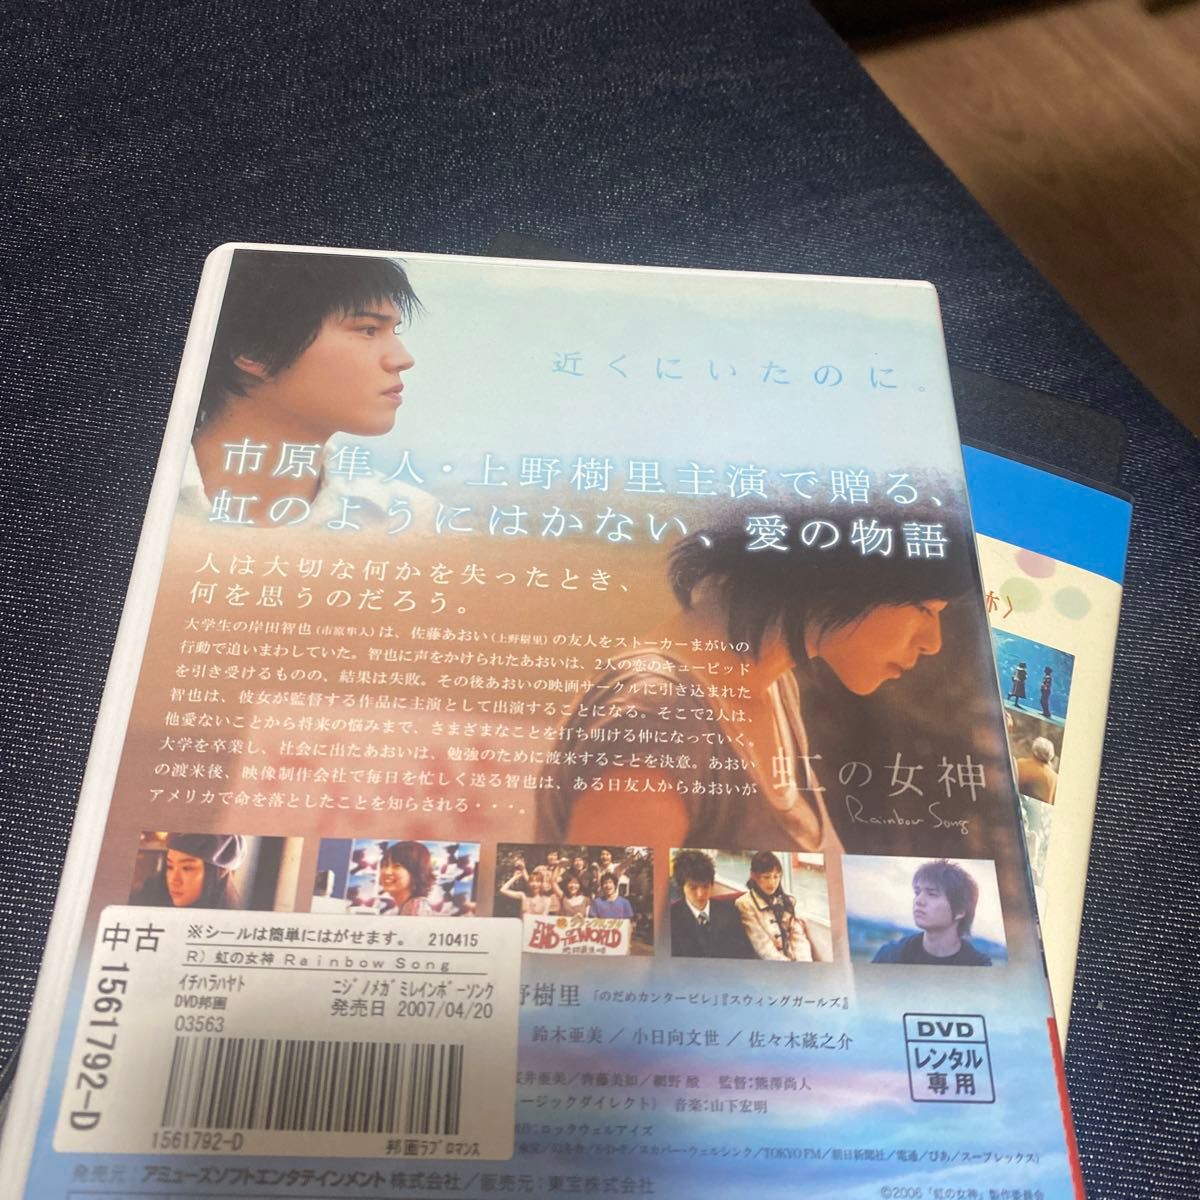 上野樹里 Blu-ray dvd